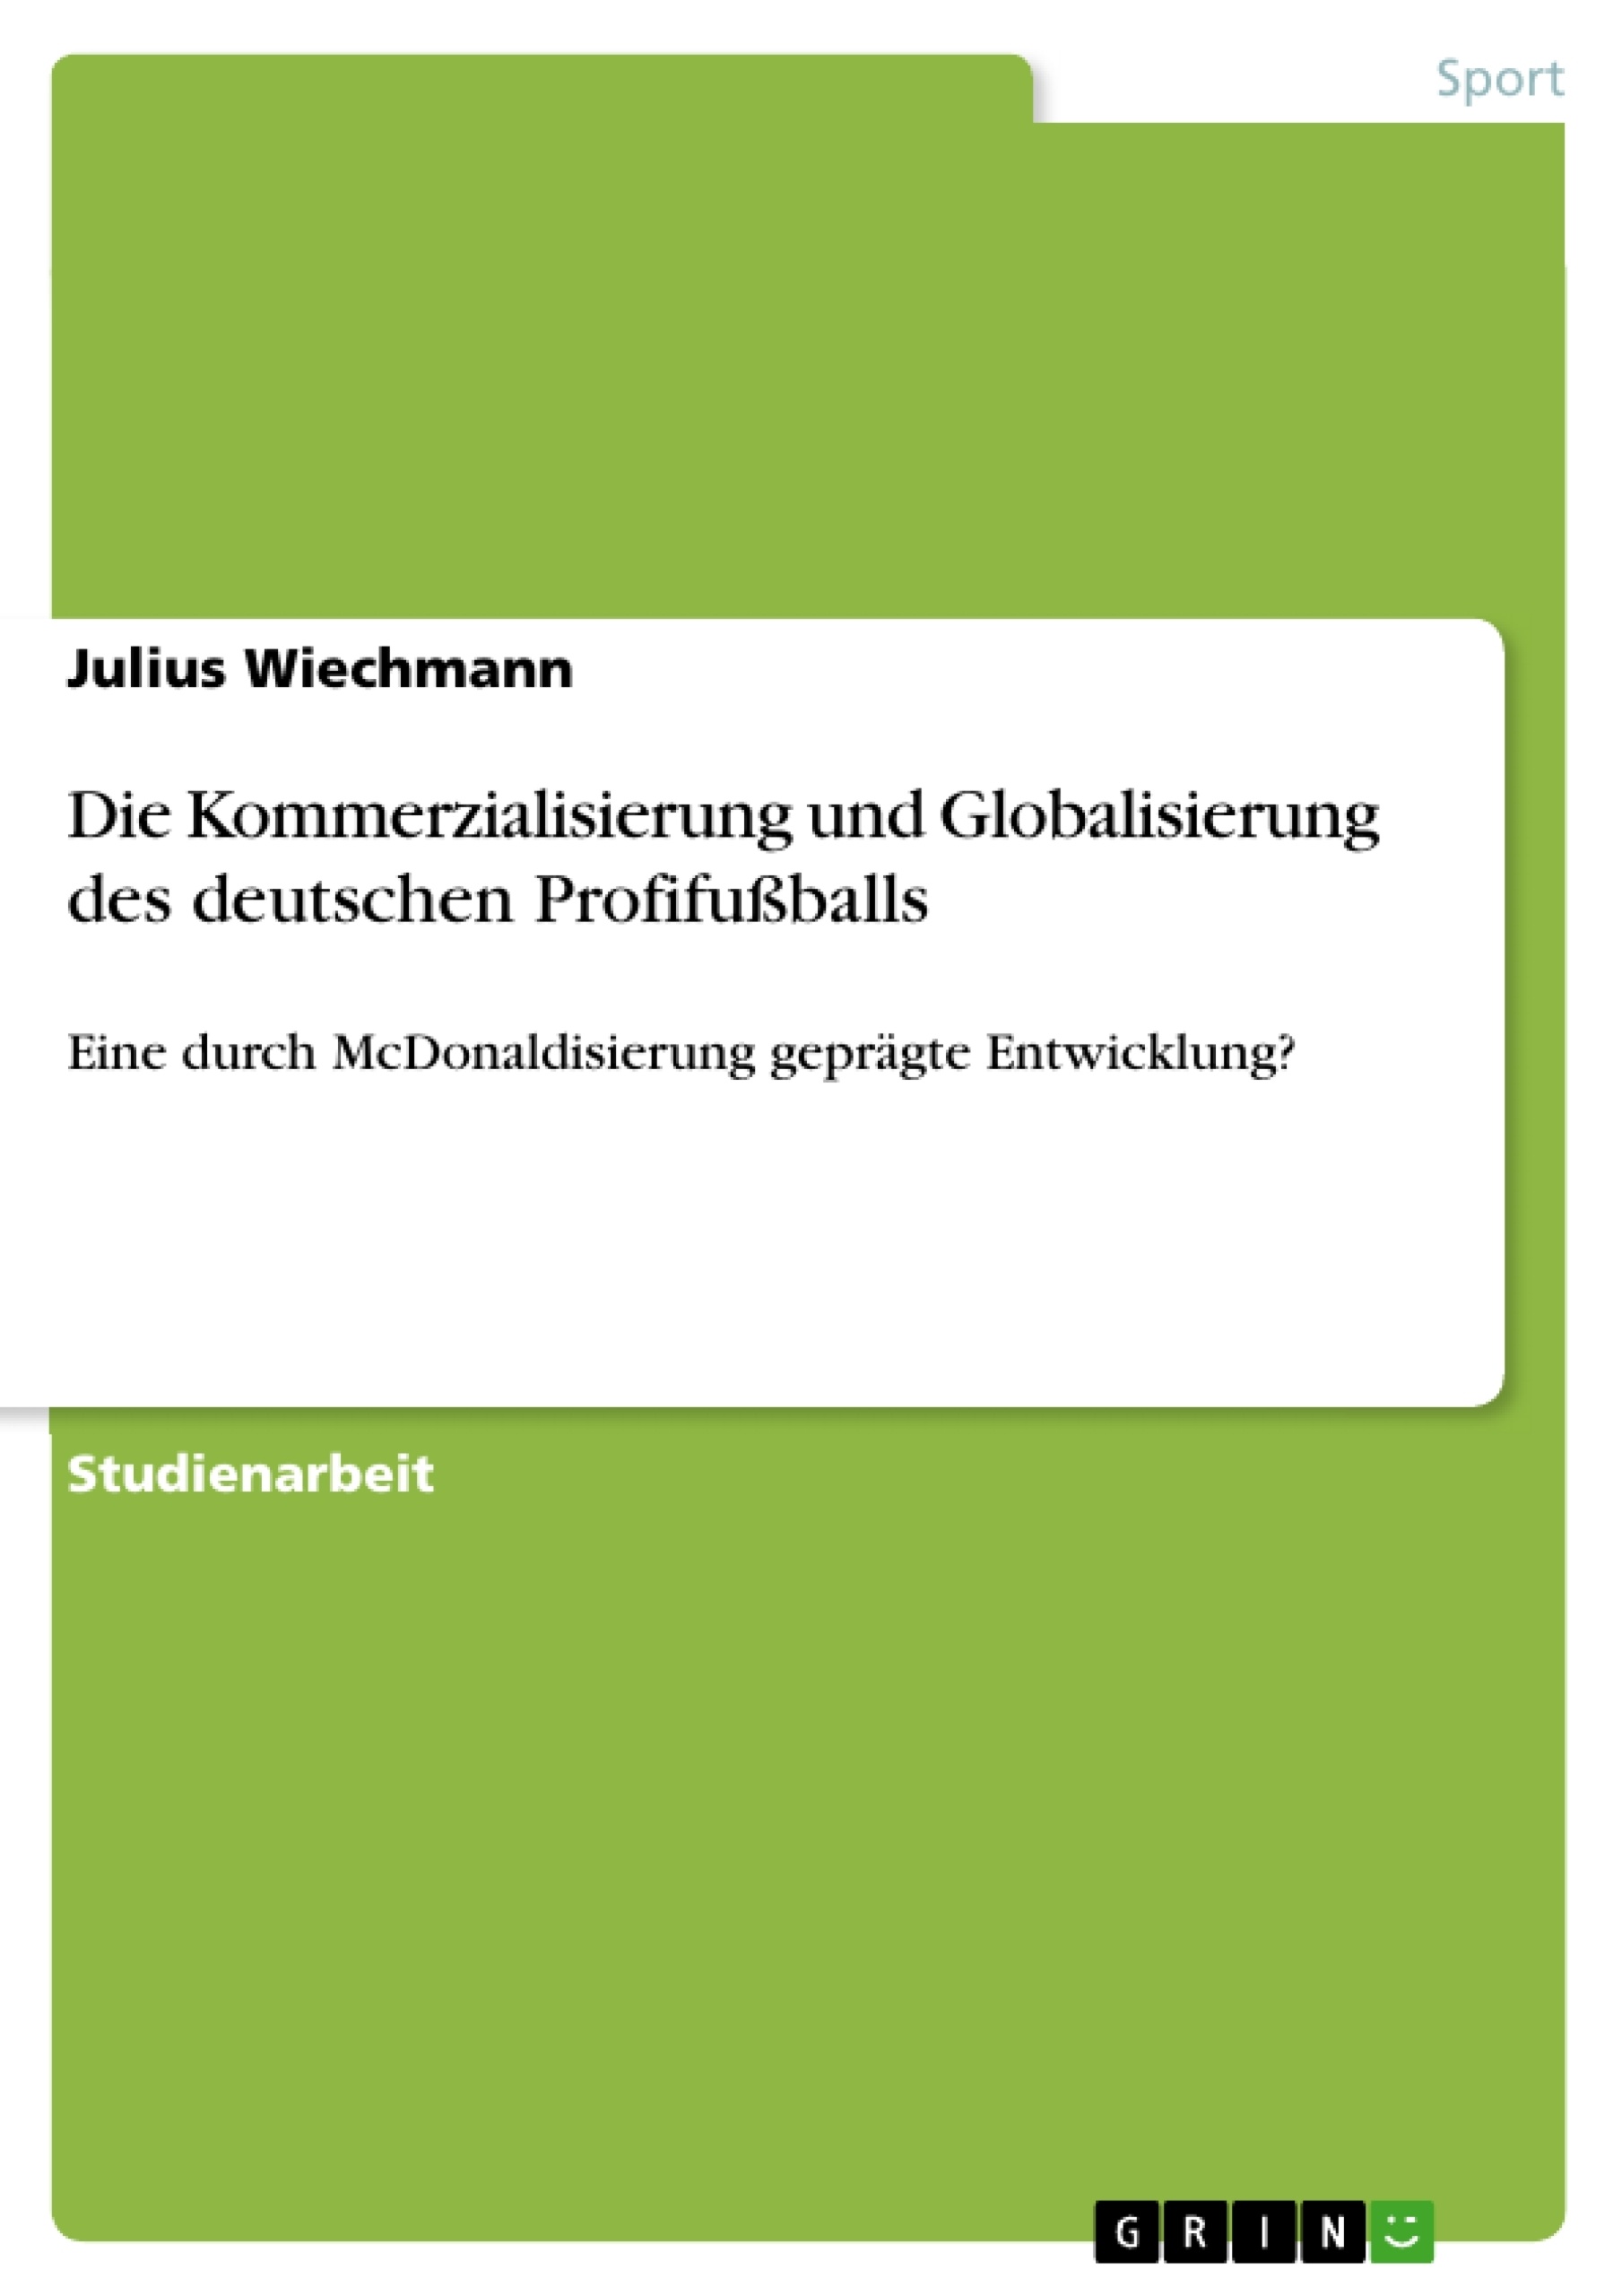 Title: Die Kommerzialisierung und Globalisierung des deutschen Profifußballs